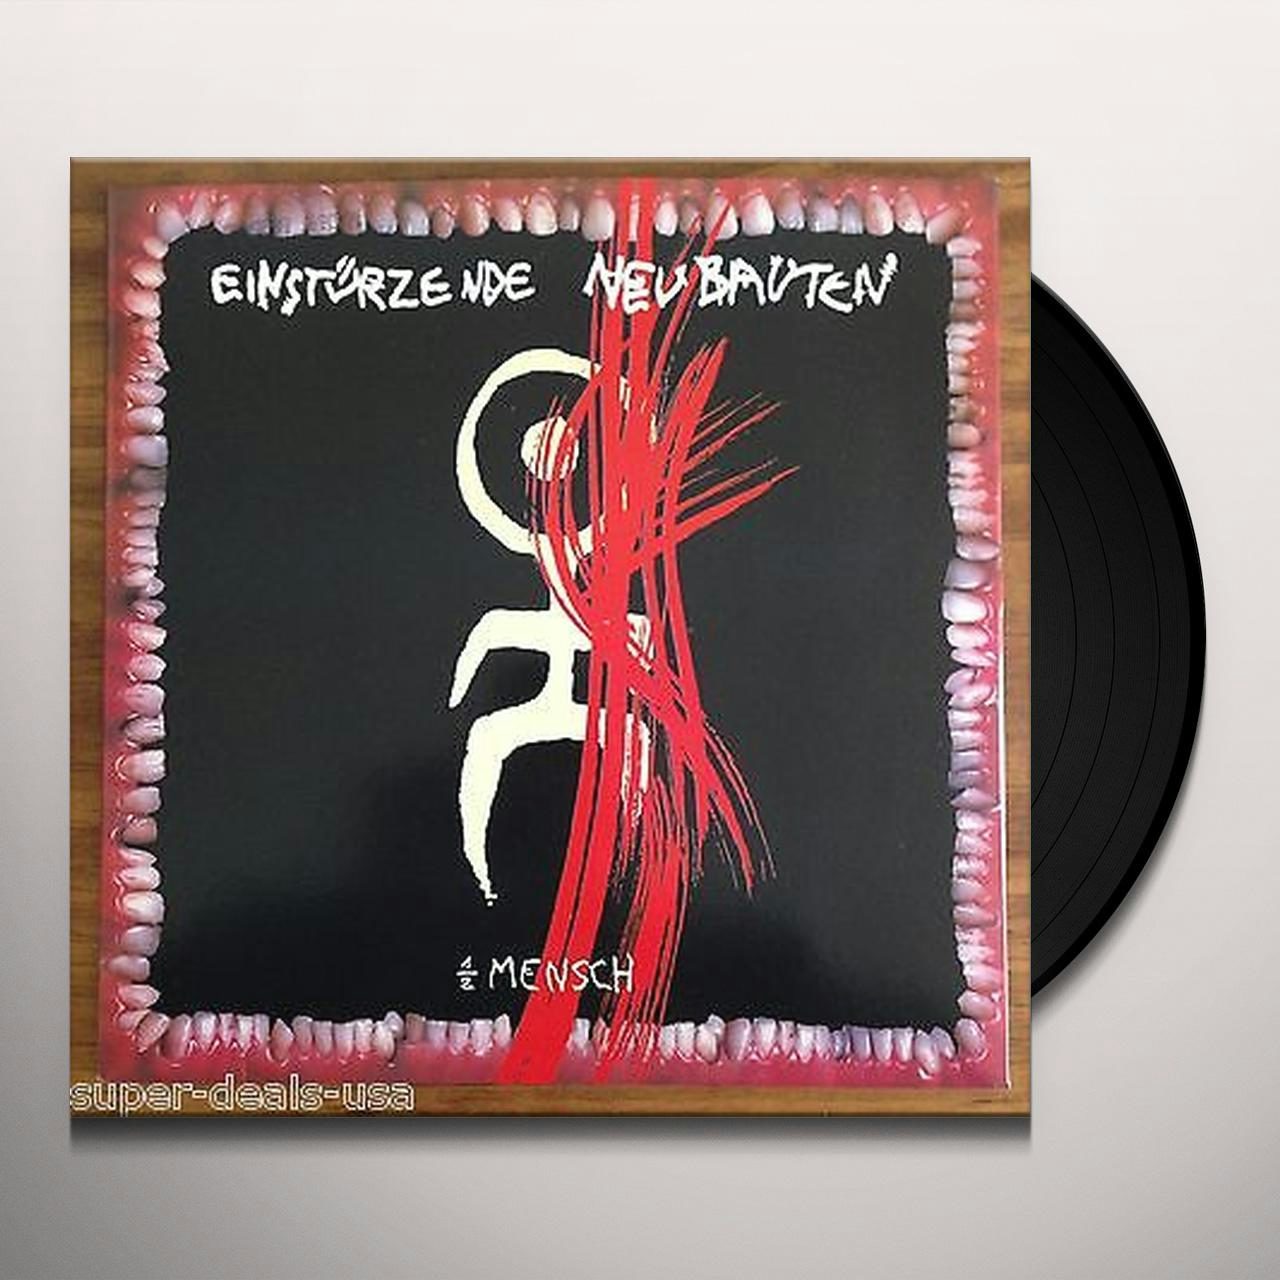 Einstürzende Neubauten 1/2 MENSCH Vinyl Record